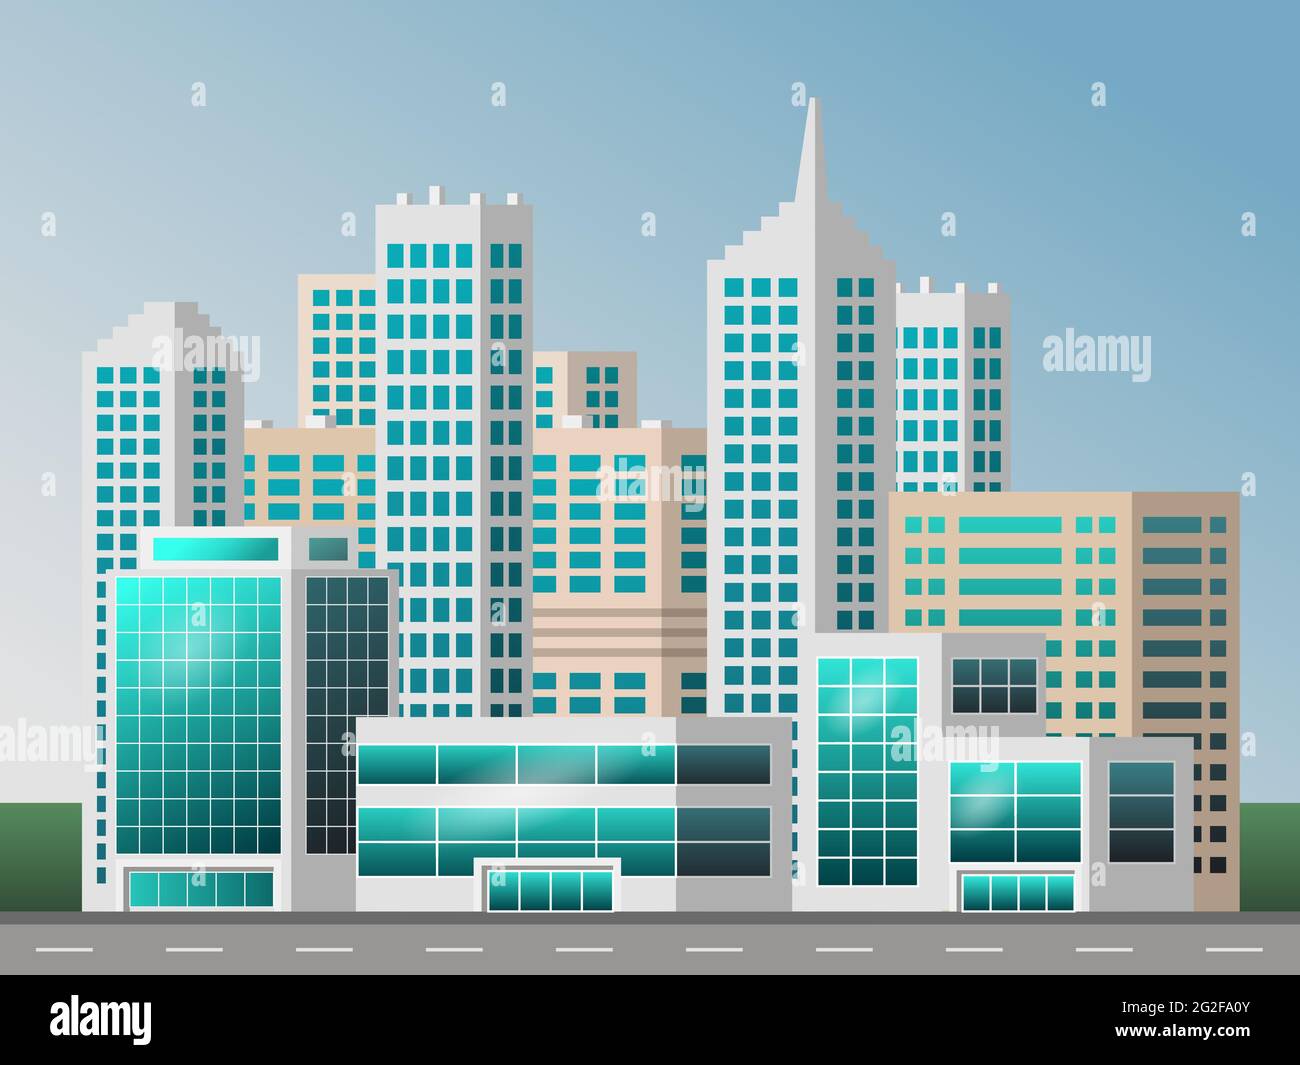 Urbane Landschaft mit großen modernen Gebäuden. Schicke Stadt, Business Center, Wolkenkratzer Häuser. Für Stadtbild-Hintergrund, Konzept oder Metropolenszene. Flach Stock Vektor